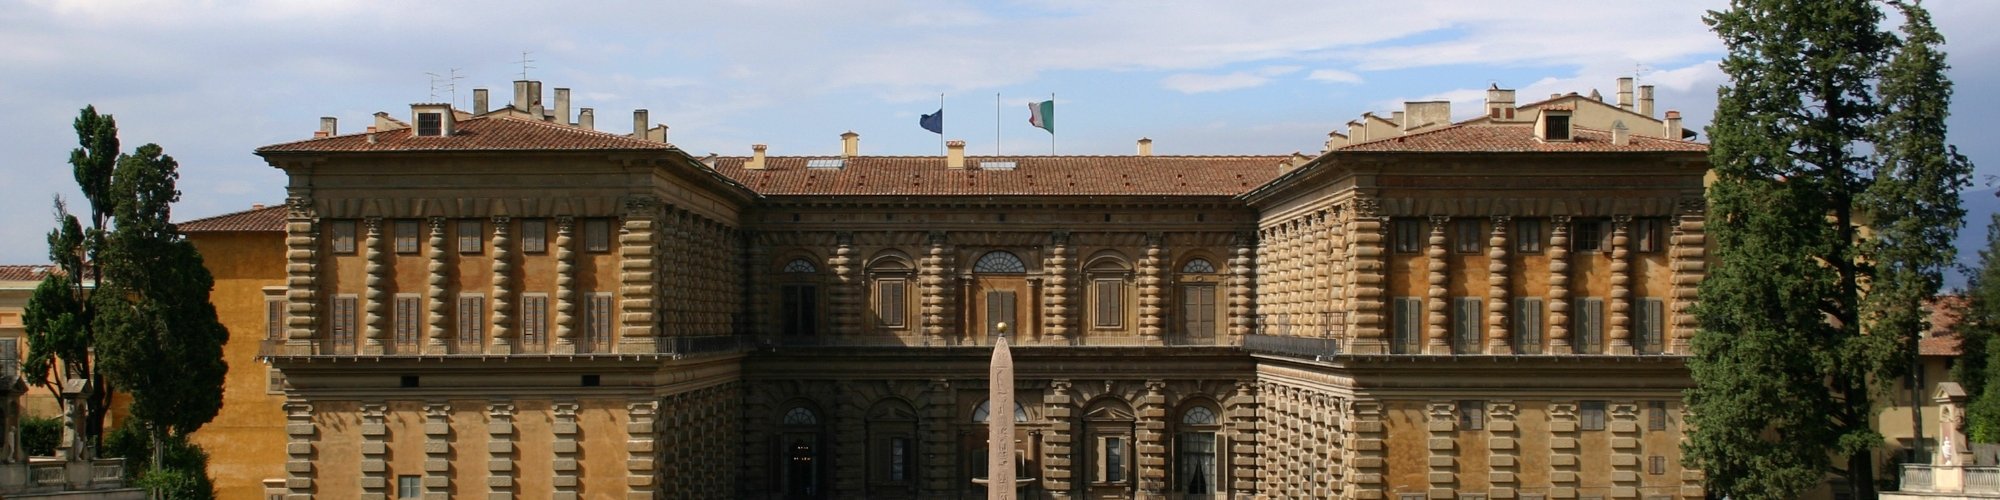 Palazzo Pitti visto dai Giardini di Boboli